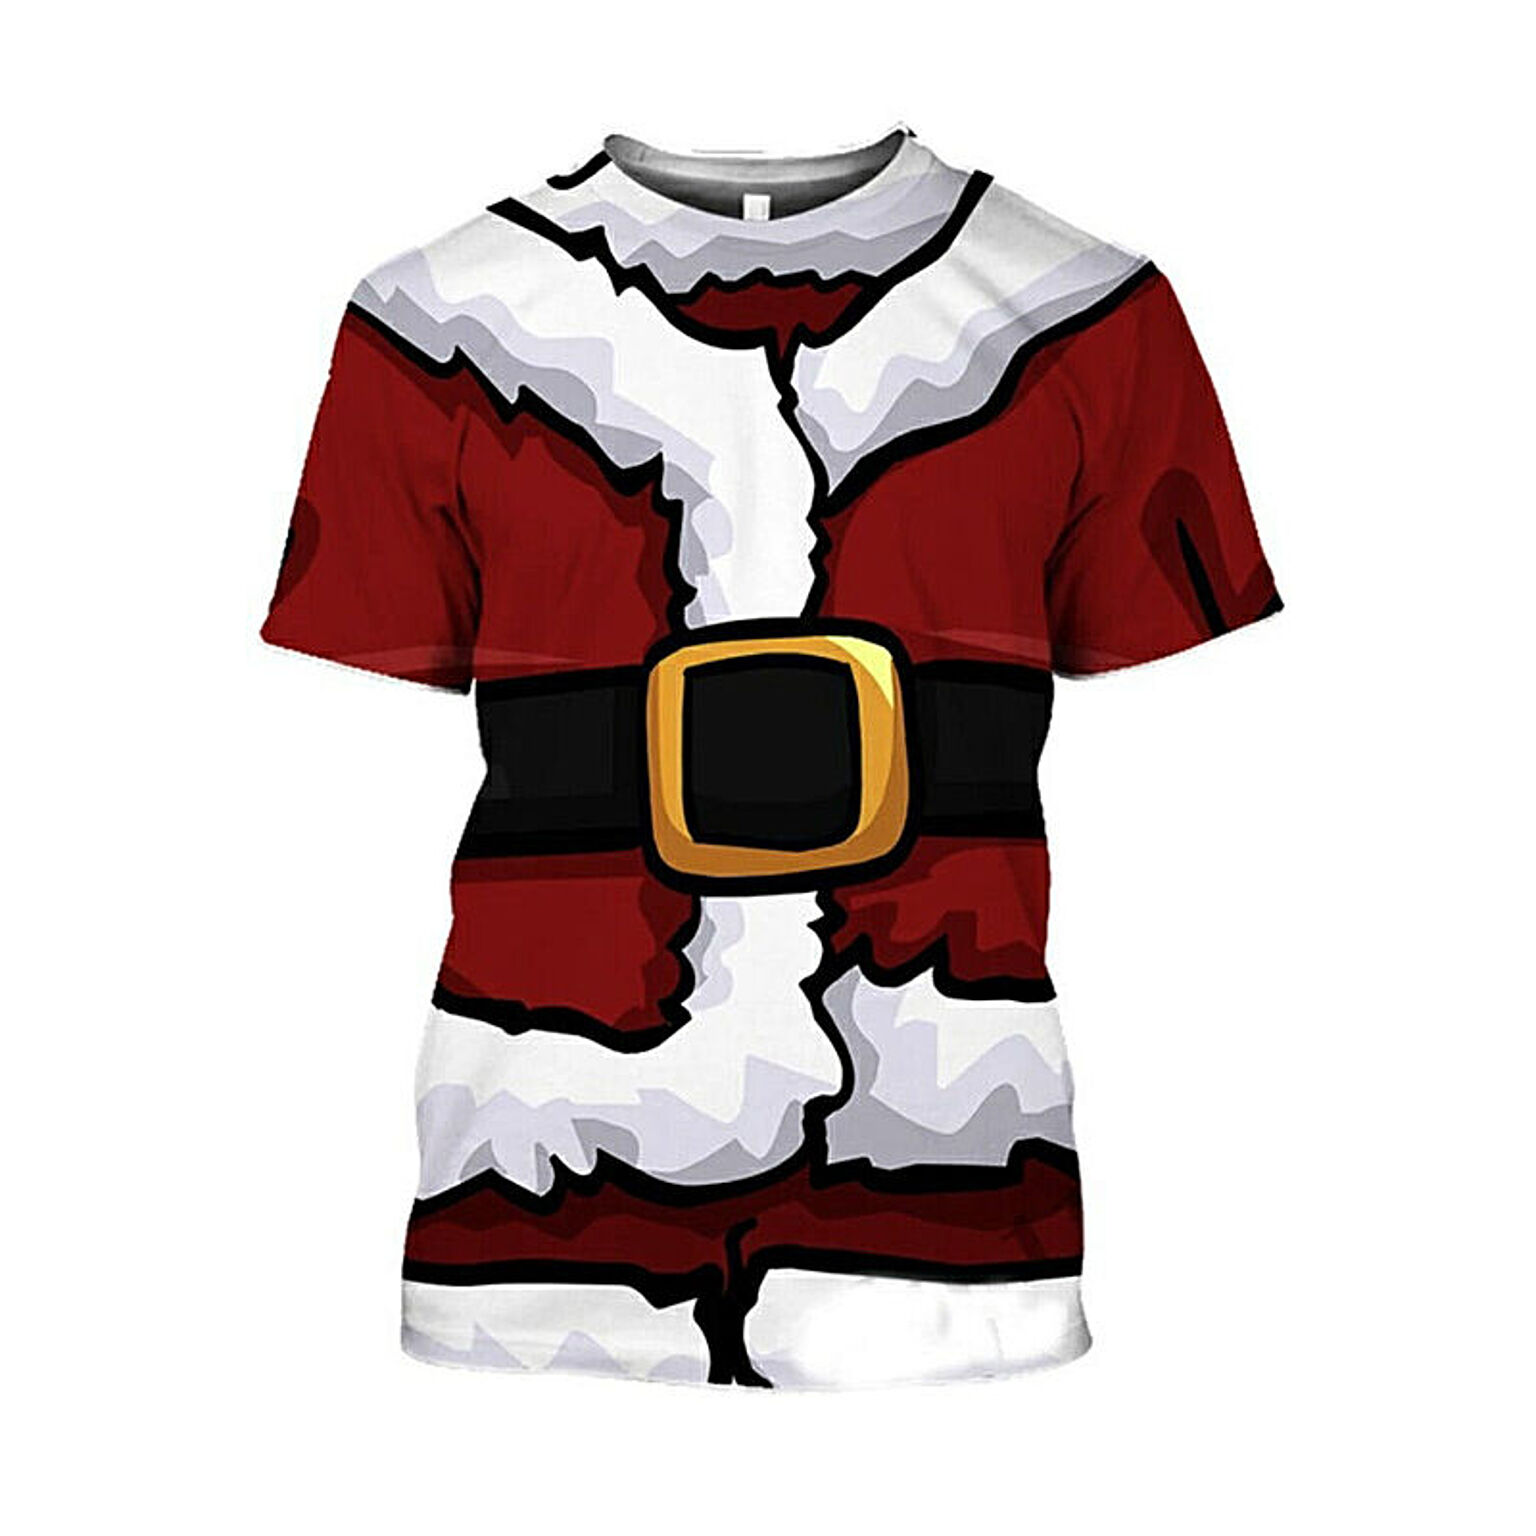 クリスマス Tシャツ サンタクロース サンタさん 半袖 半そで コスプレ 衣類 リアル 本格的 誕生日 室内 装飾メリークリスマス